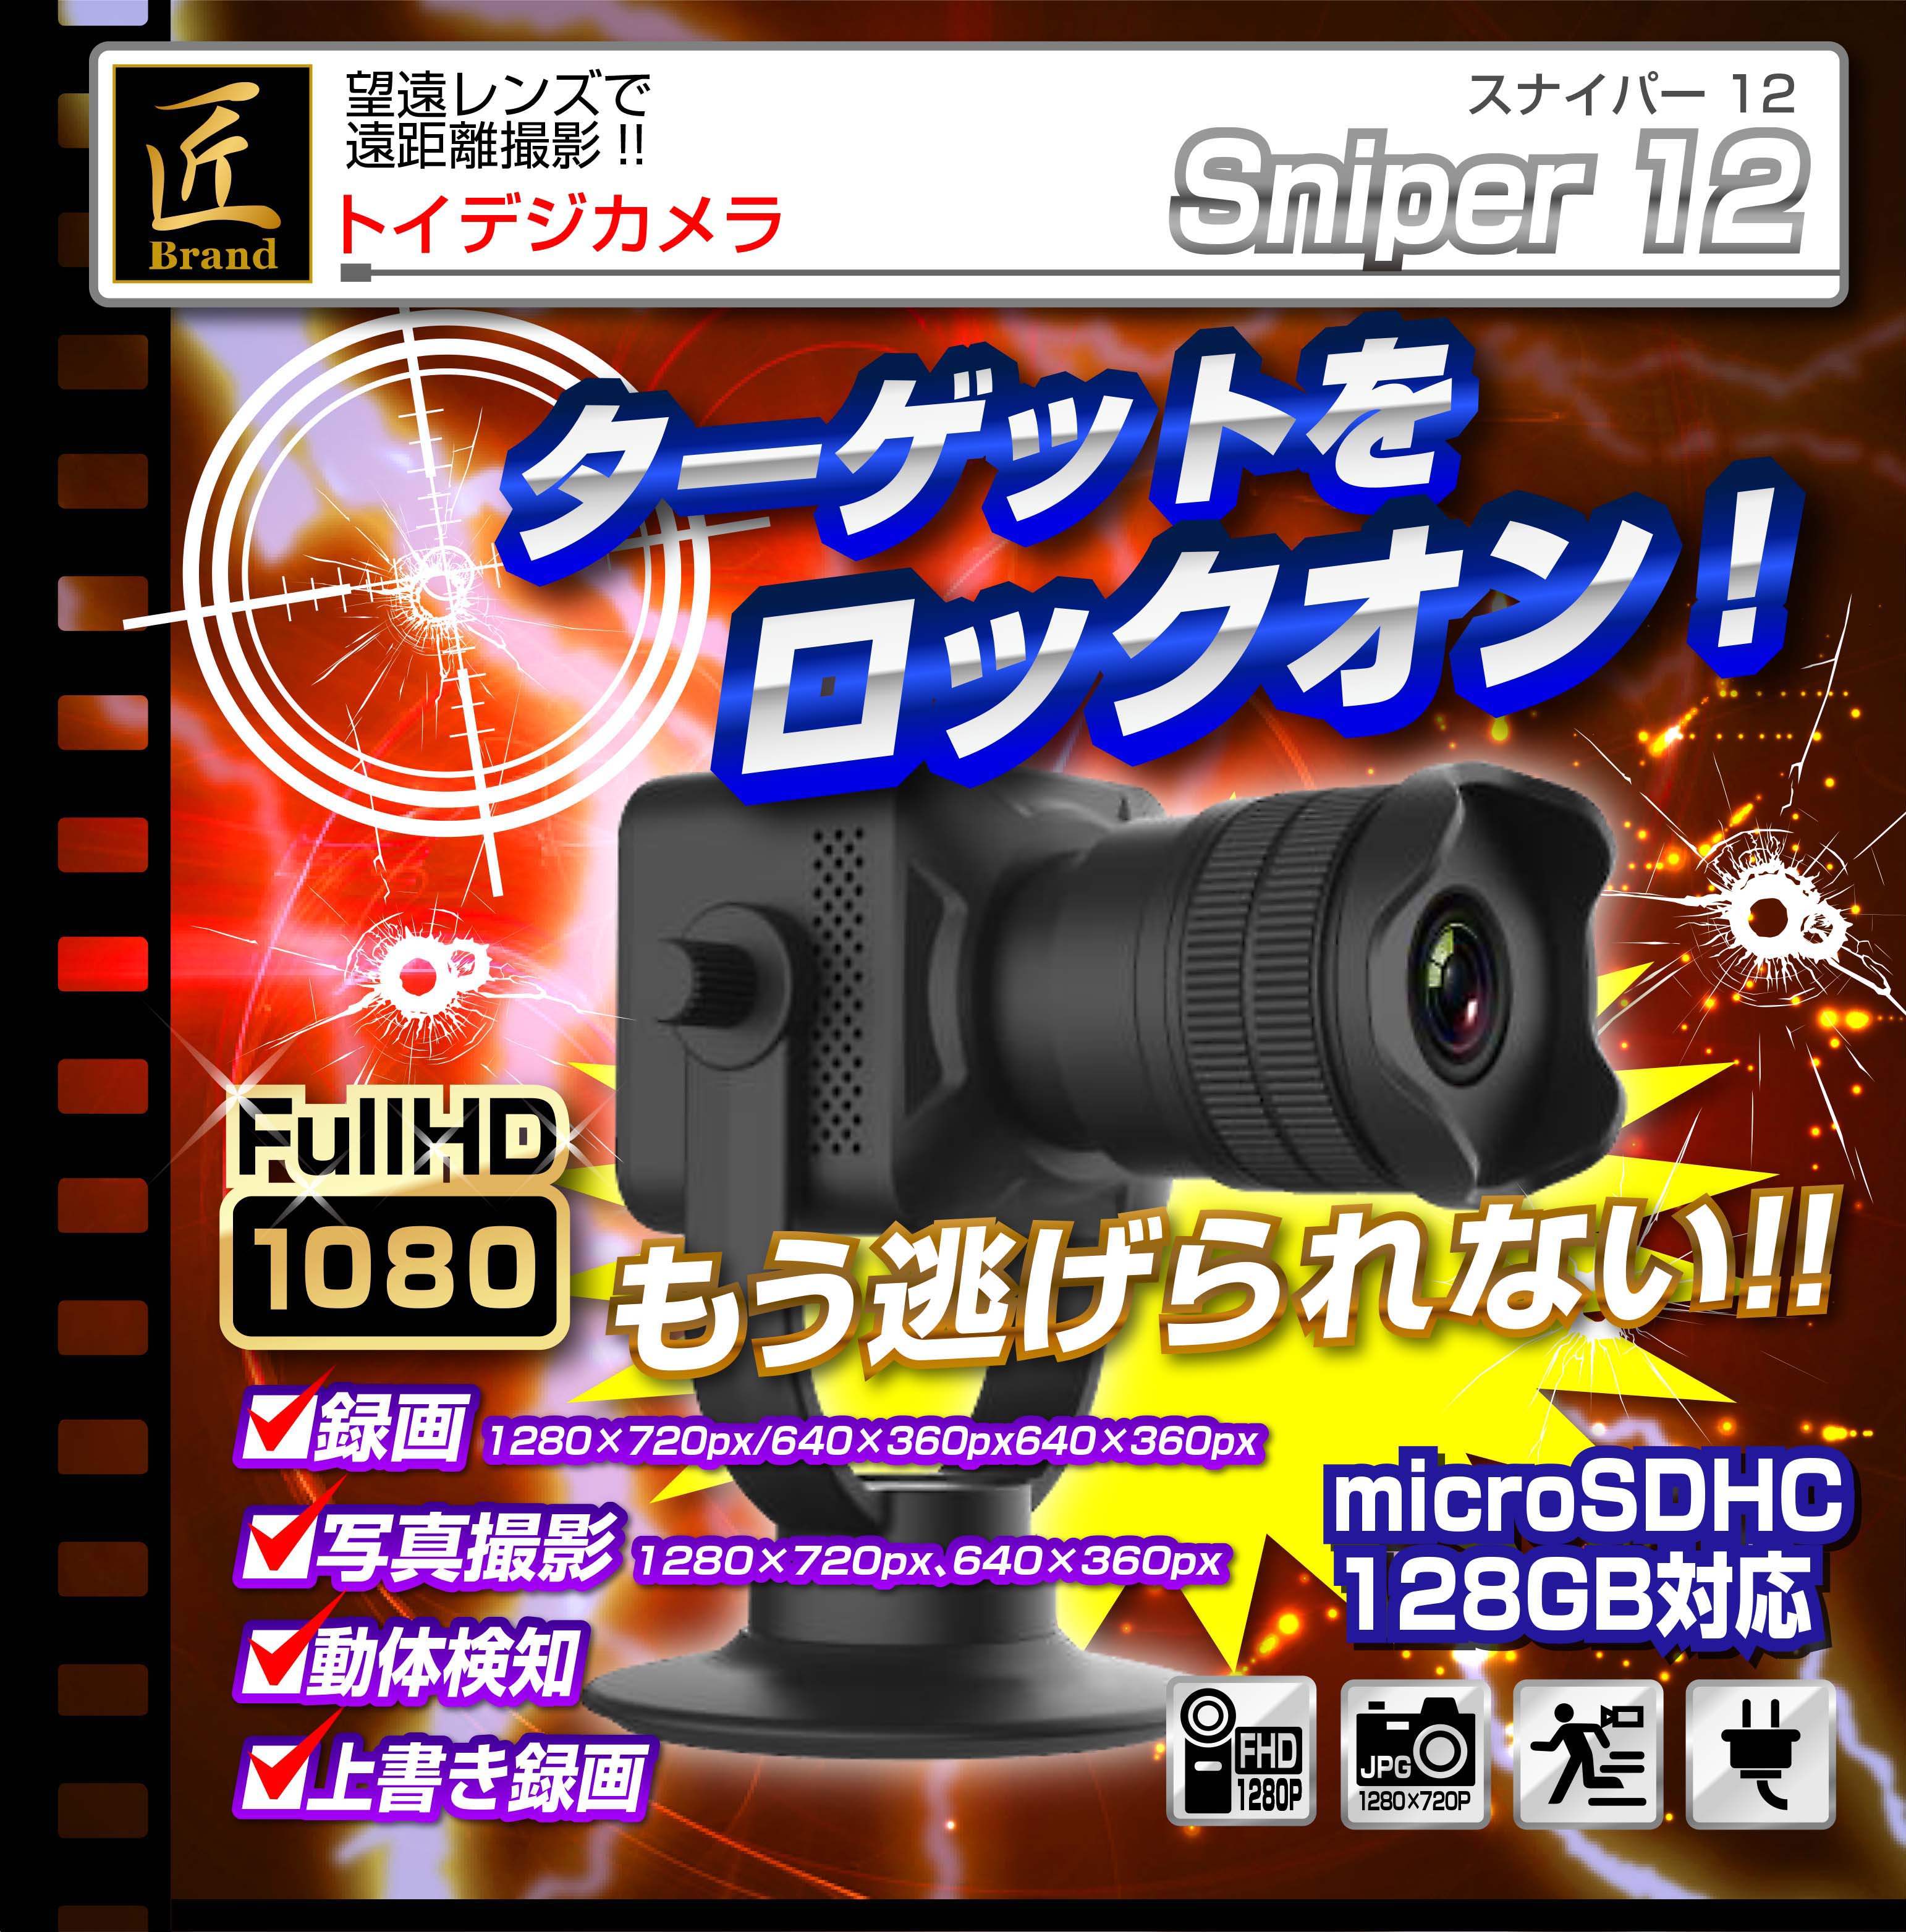 Wi-Fiトイデジカメラ(匠ブランド)『Sniper 12』(スナイパ― トゥエルブ)